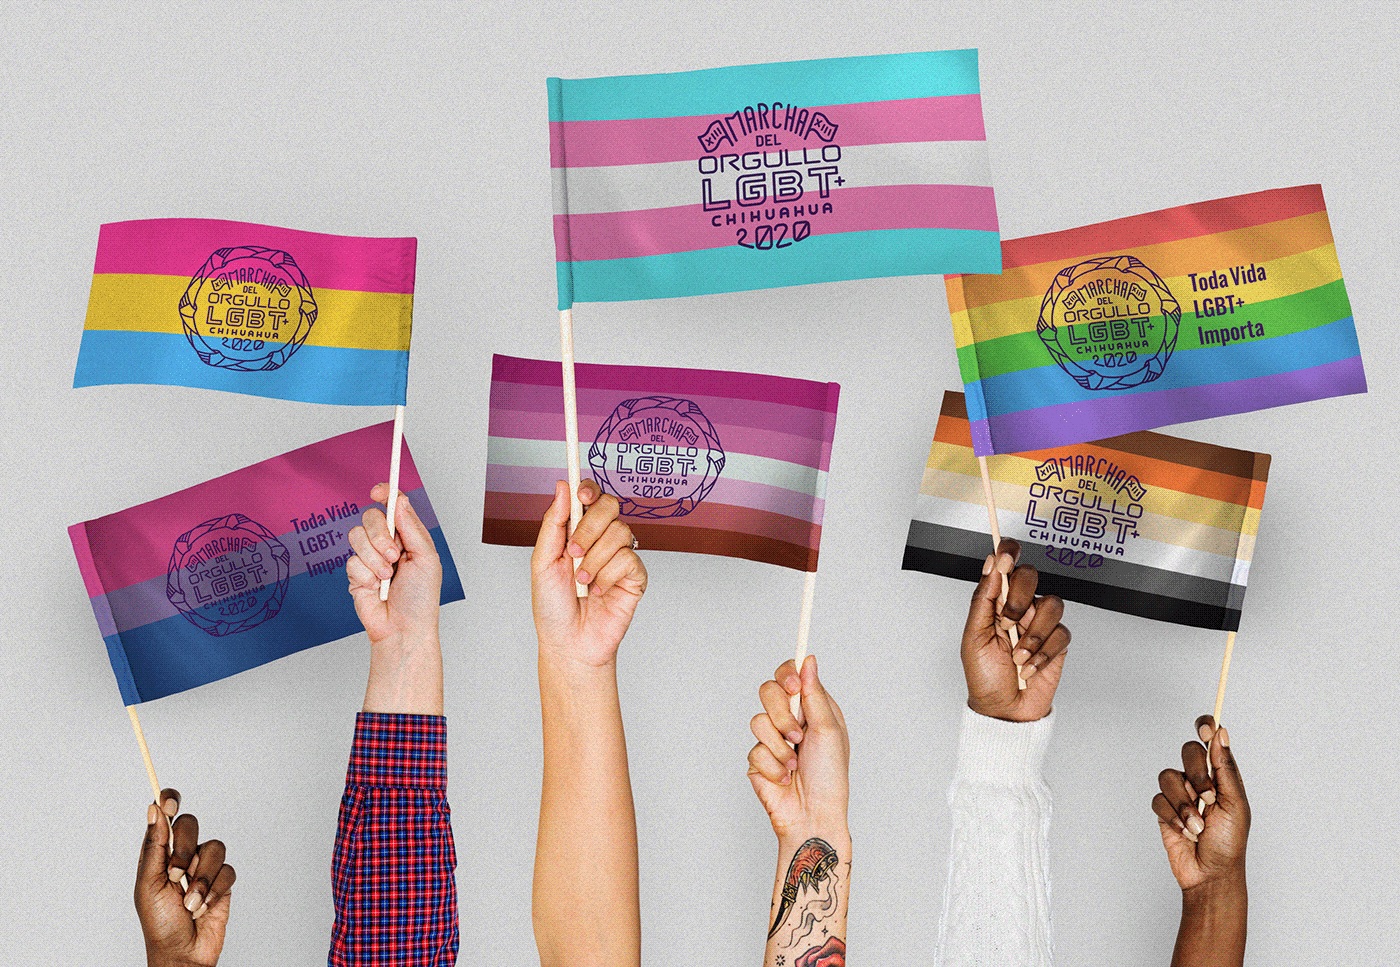 chihuahua gay lesbian LGBT lgbt+ LGBTTTI marcha lgbt orgullo pride TRANS